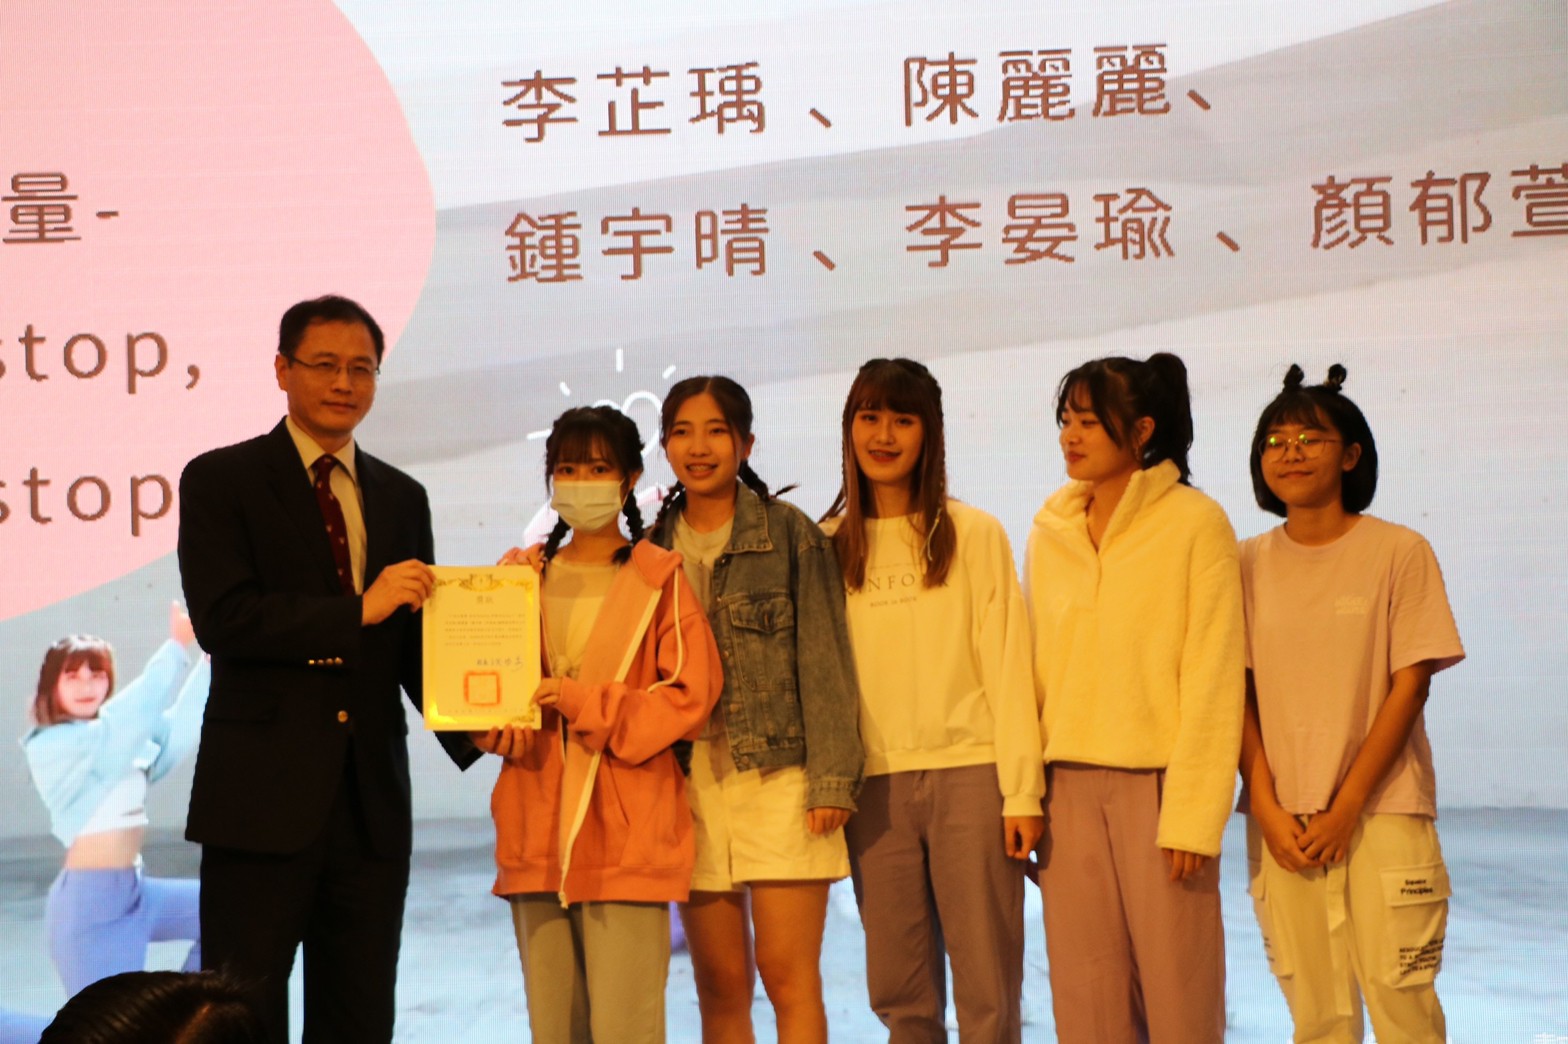 
	郭樹勳副校長頒發獎狀給學生社團
